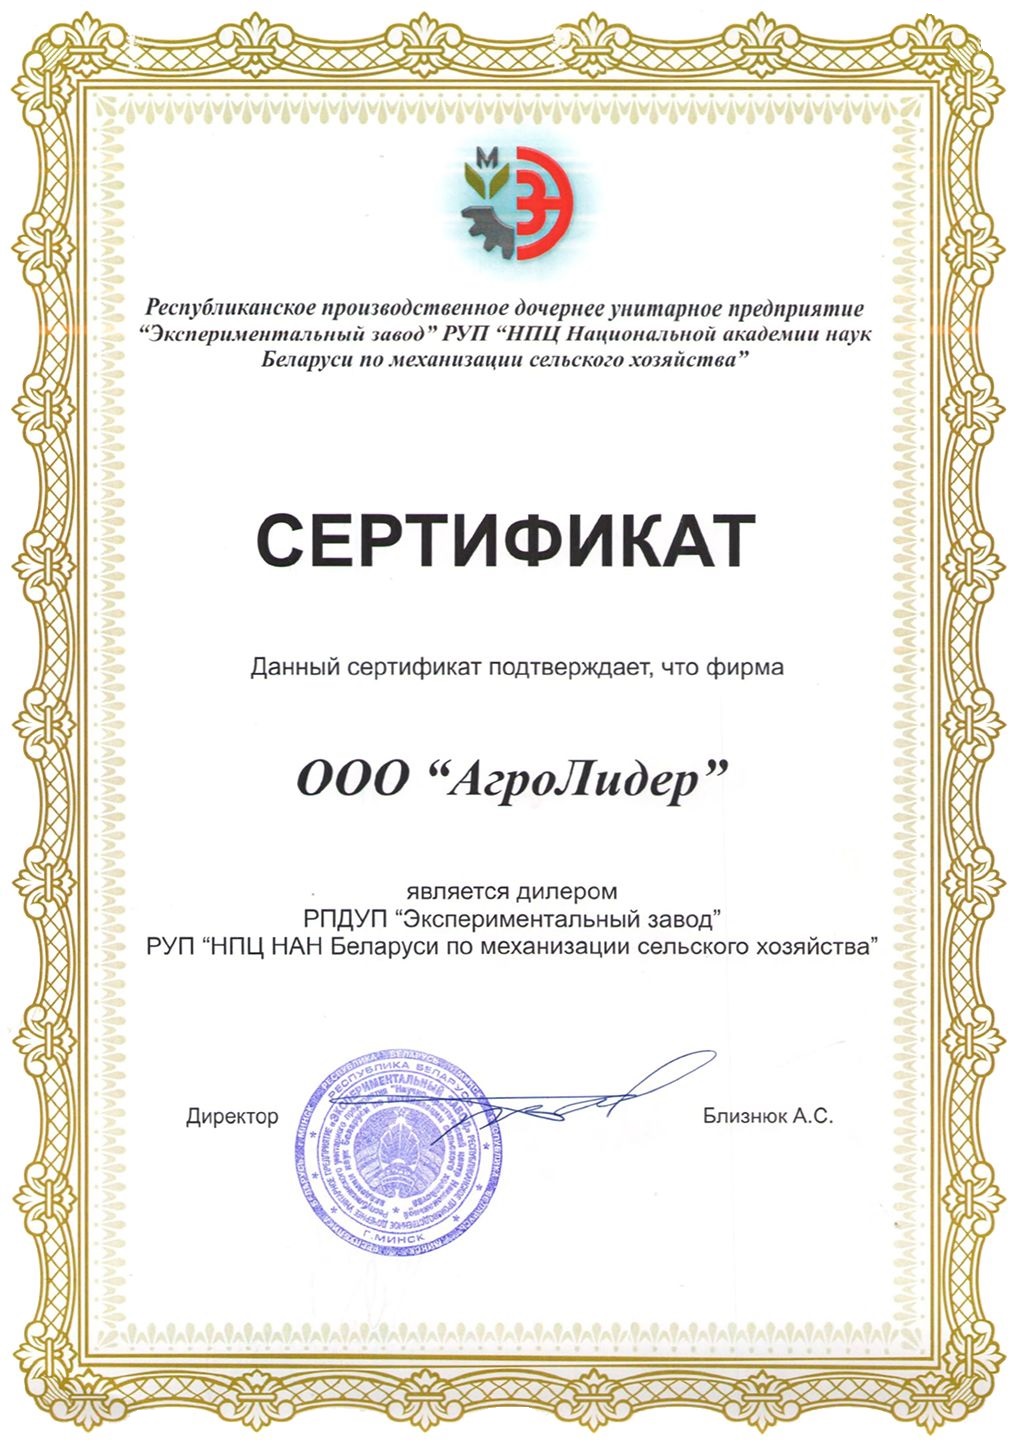 Сертификат Экспериментального завода